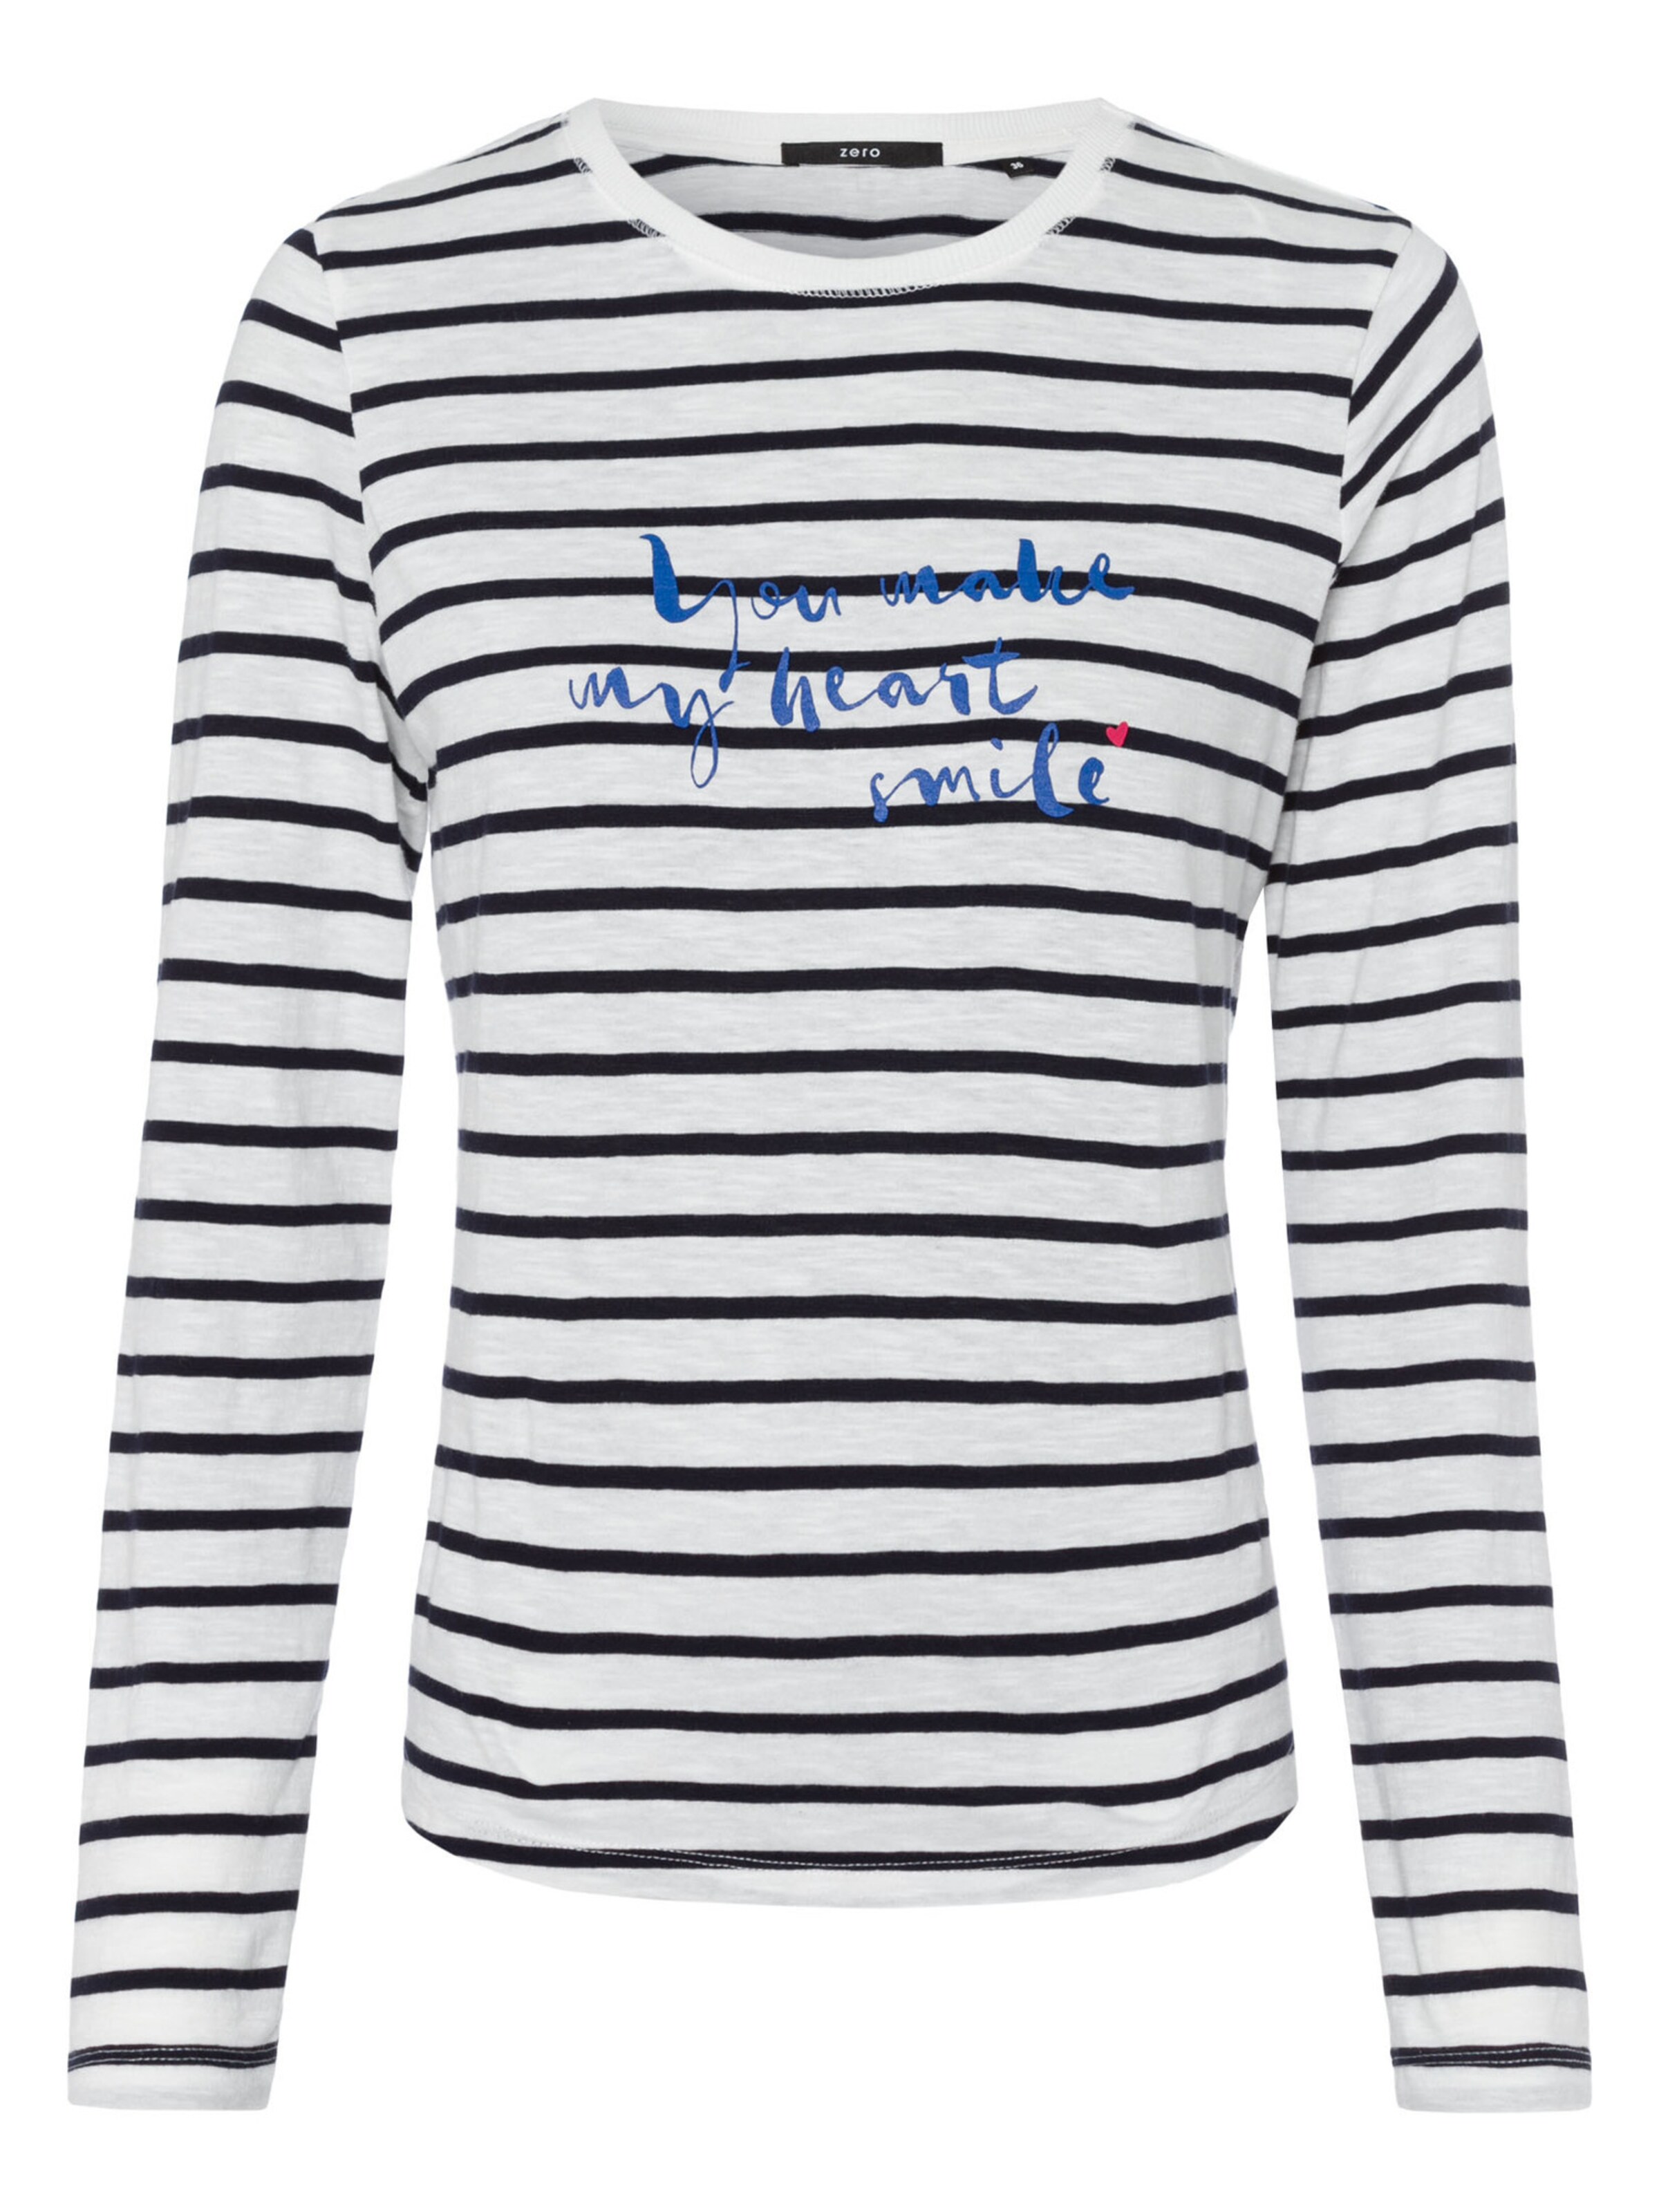 Frauen Shirts & Tops zero Jerseyshirt mit Streifen in Weiß - GU57471